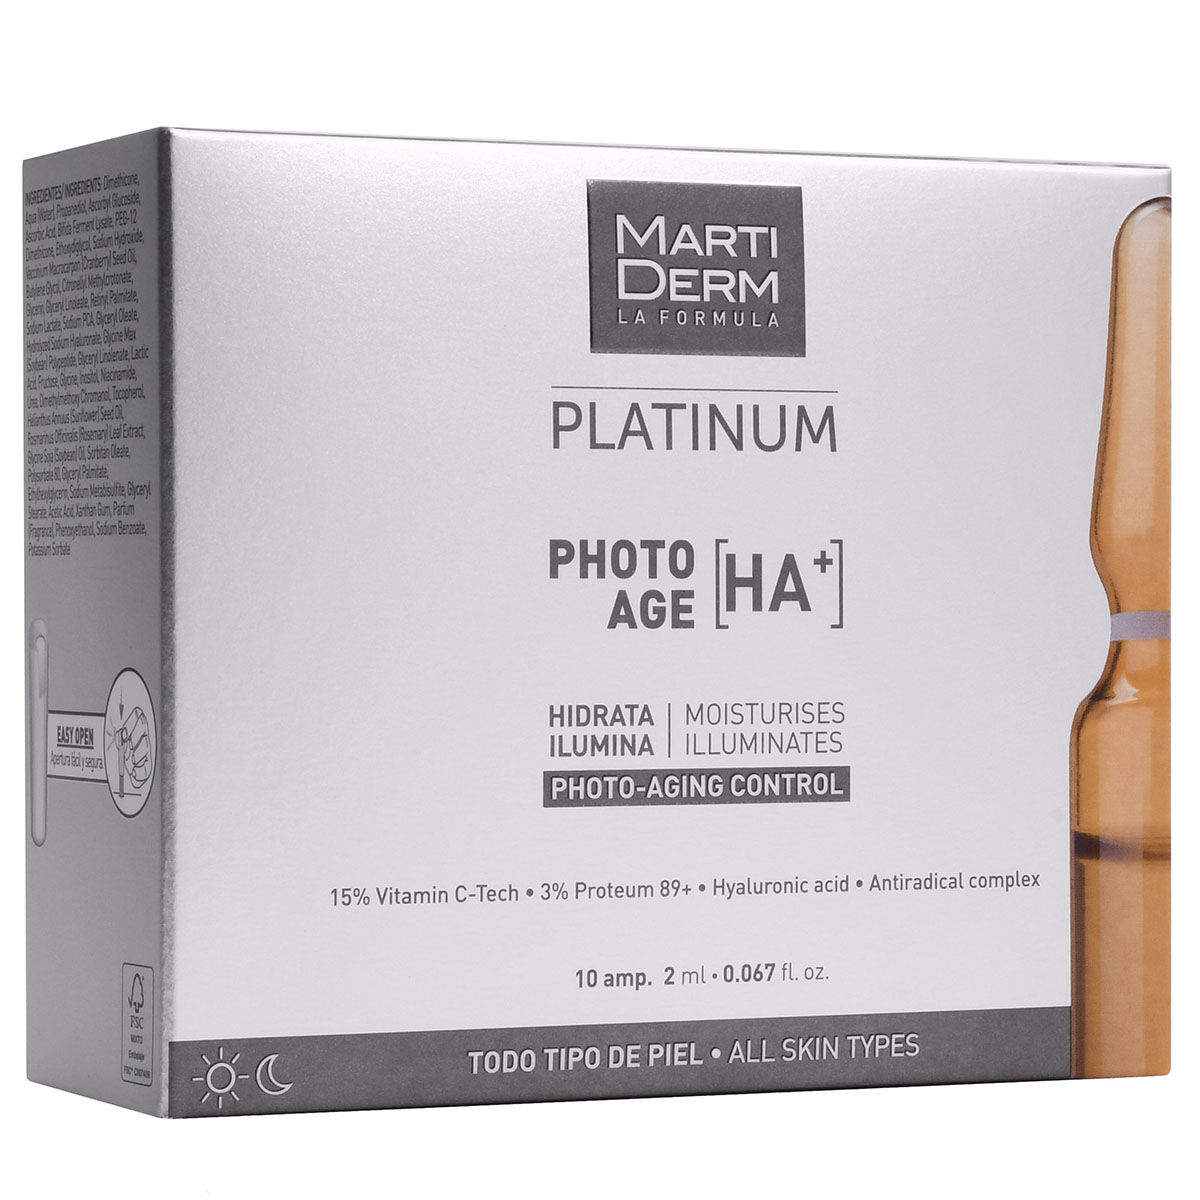 Увлажняющая и осветляющая сыворотка для лица в ампулах Martiderm Platinum Photo Age Ha+, 10х2 мл martiderm экспресс уход